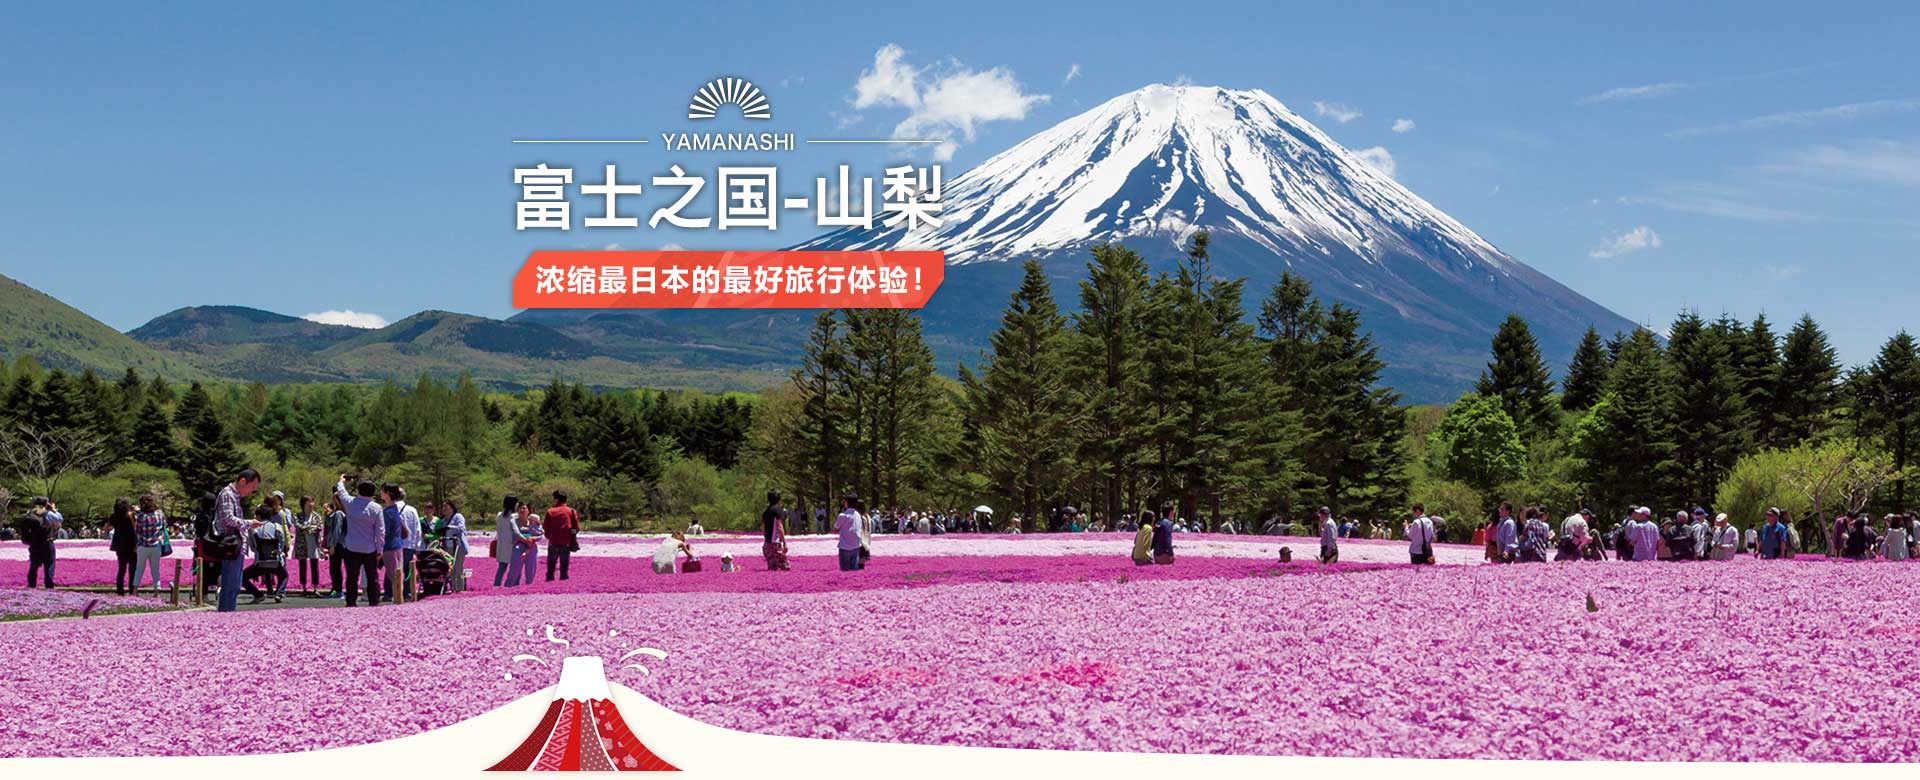 富士之国-山梨 浓缩最日本的最好旅行体验！